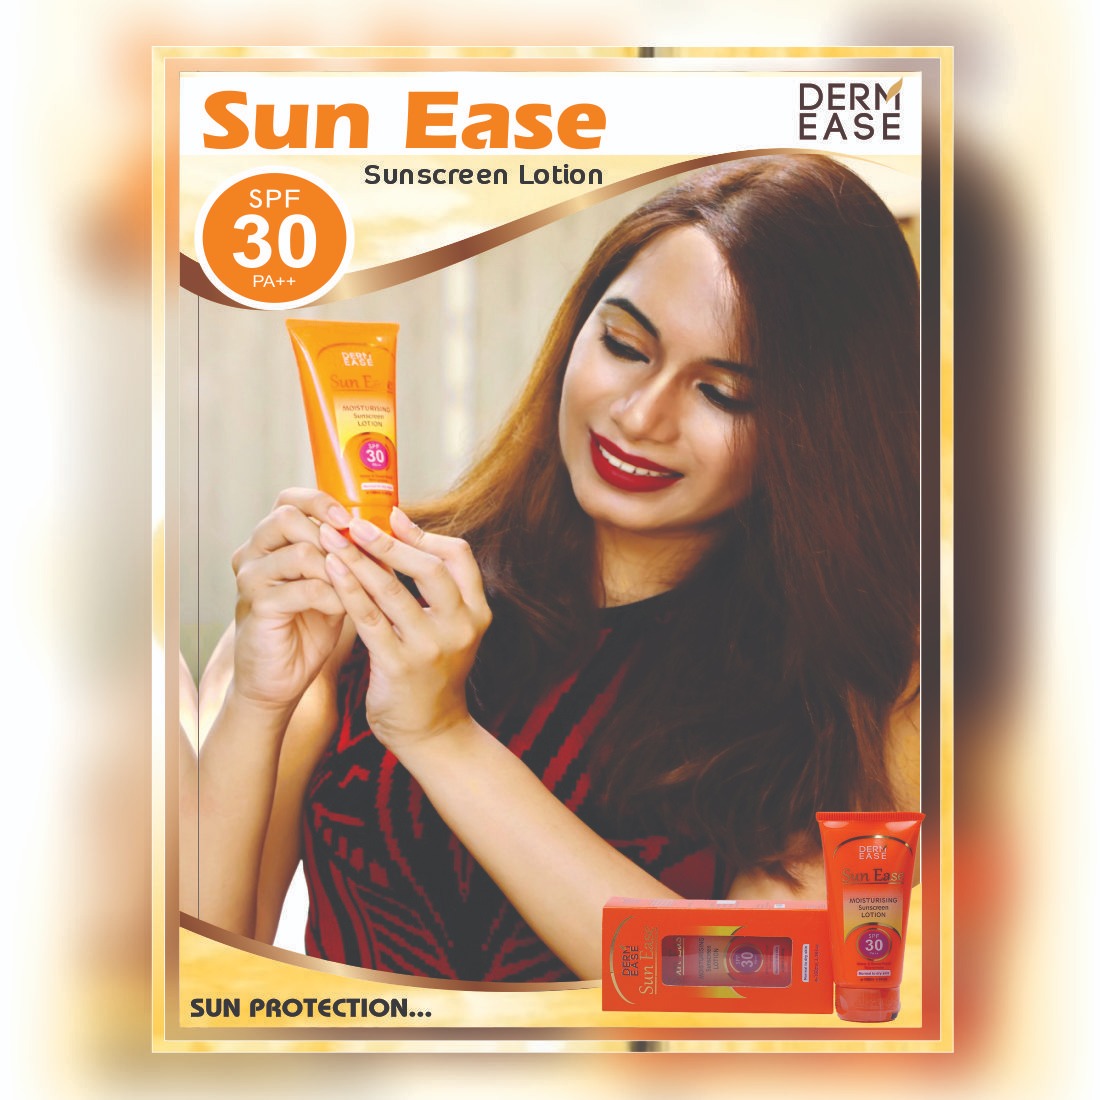 DERM EASE Sun Ease Sunscreen Body Lotion Combo